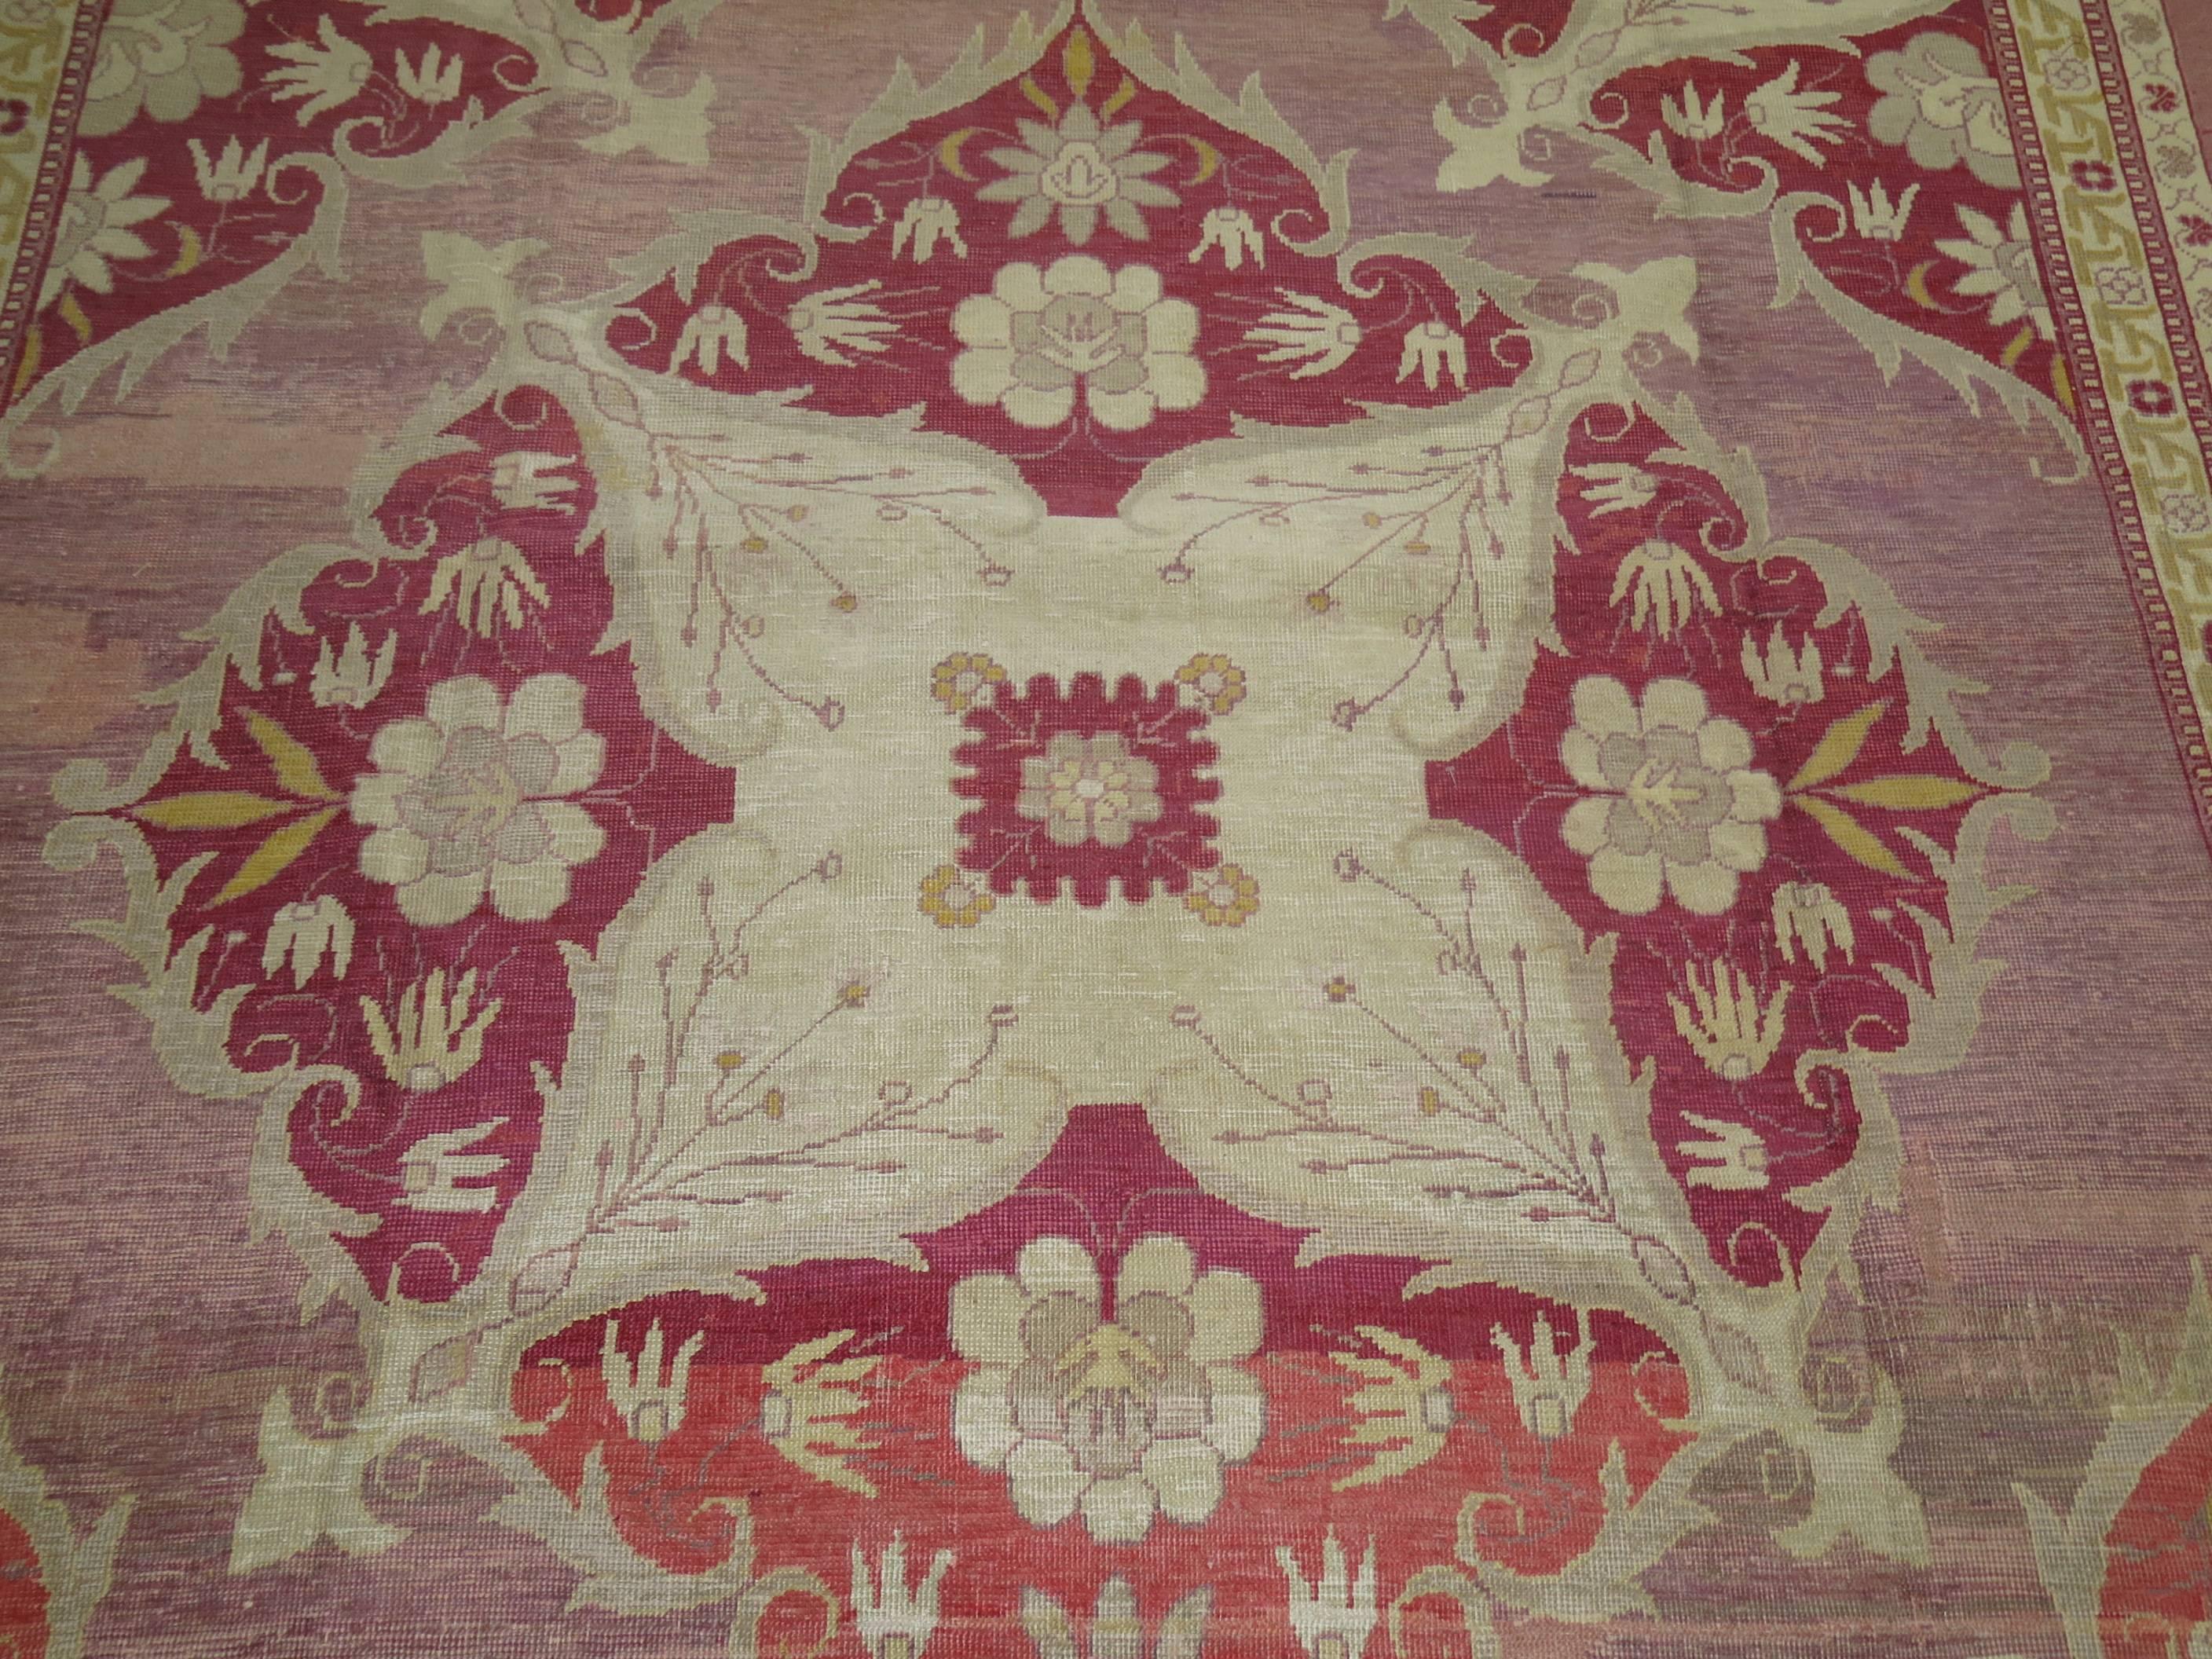 Eine ziemlich einzigartige türkische  teppich mit schönen burgunderroten, rosa und lavendelfarbenen Tönen. Die Grafik und das Design dieses Teppichs machen ihn noch außergewöhnlicher.  Anfang des 19. Jahrhunderts wurde am Rande Istanbuls die